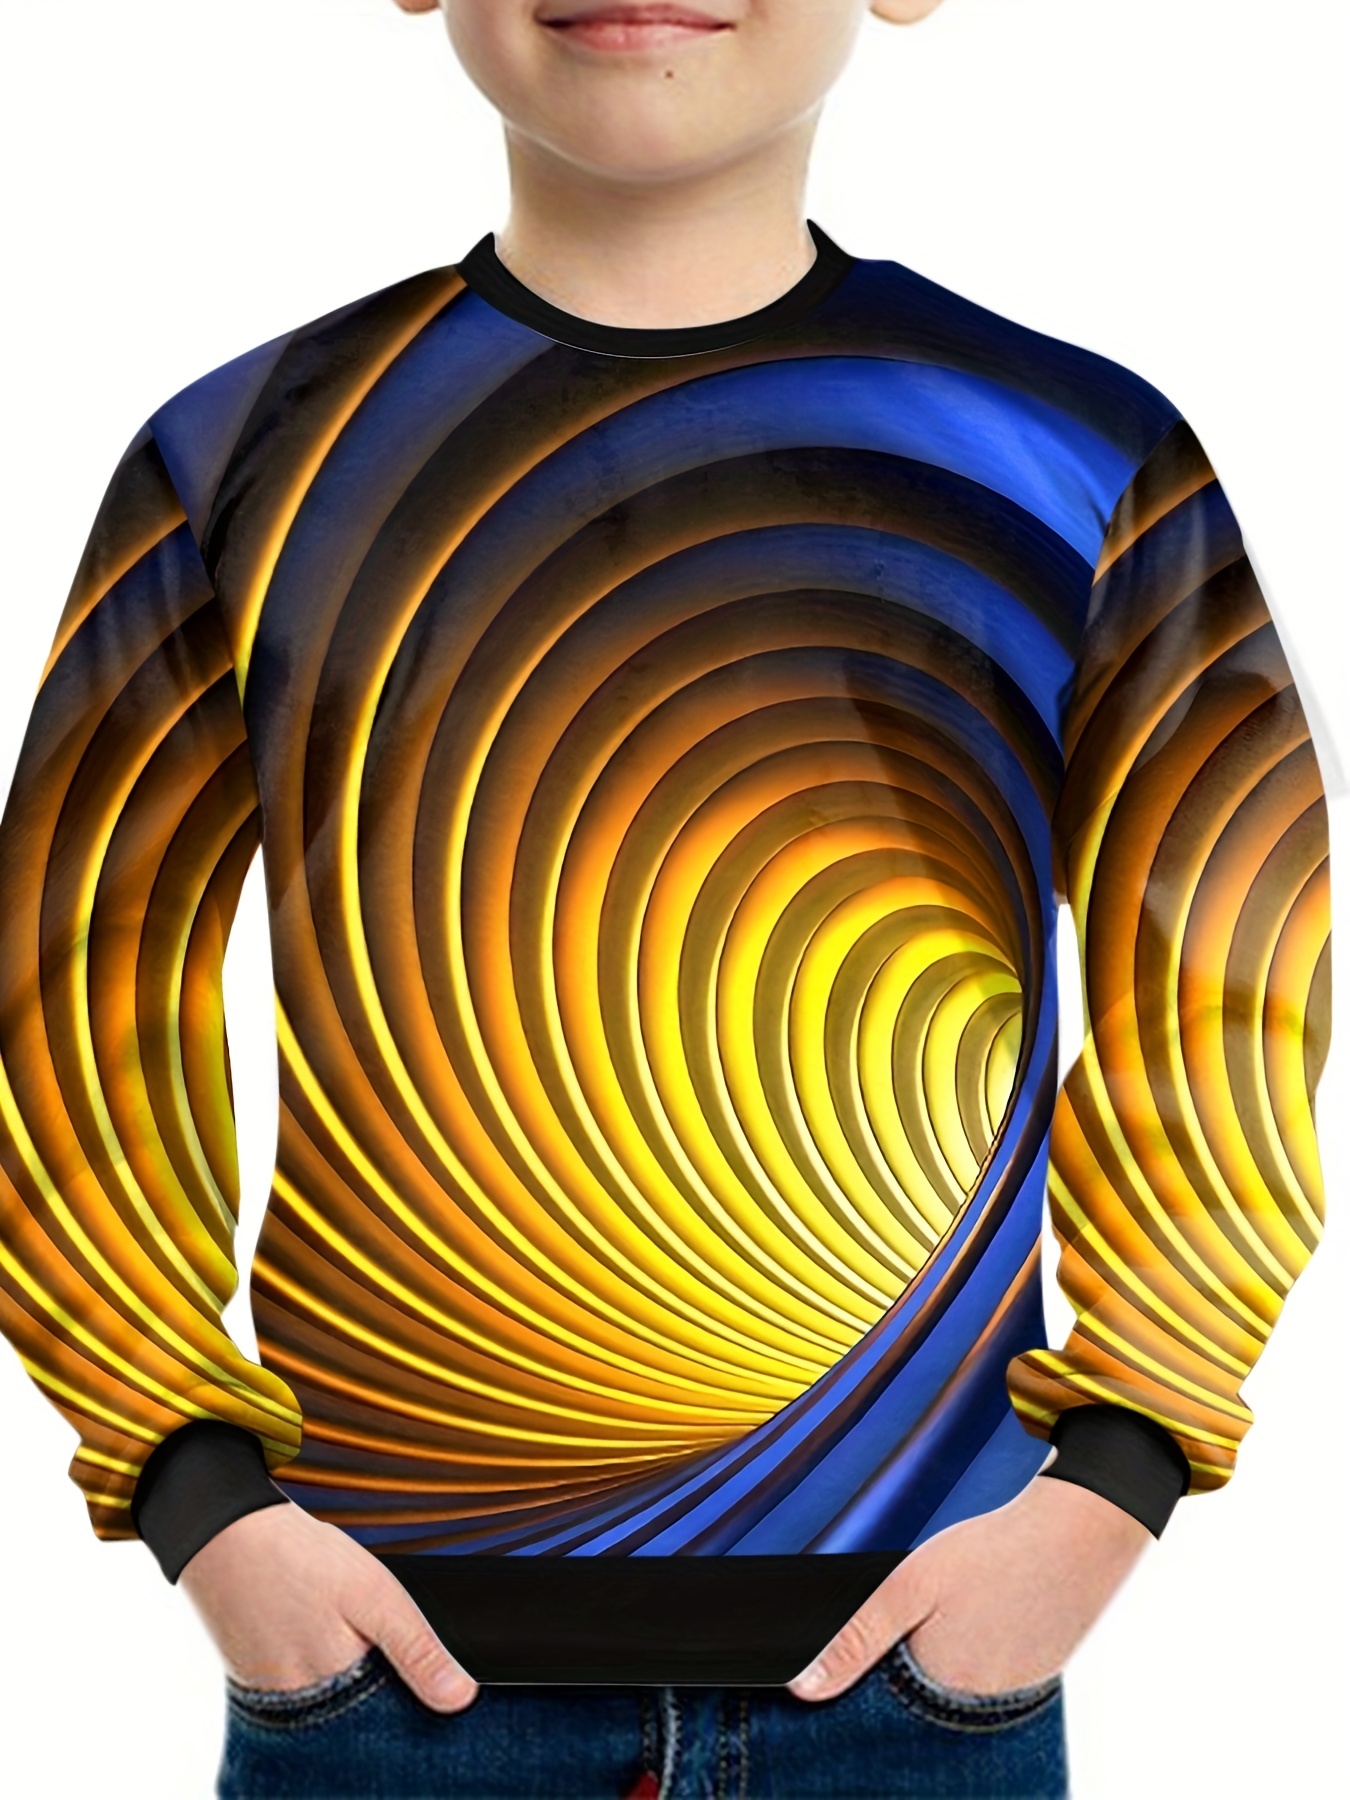 3d Swirl Pattern Sweatshirt For Kids, Trendy Pullover, Casual Long